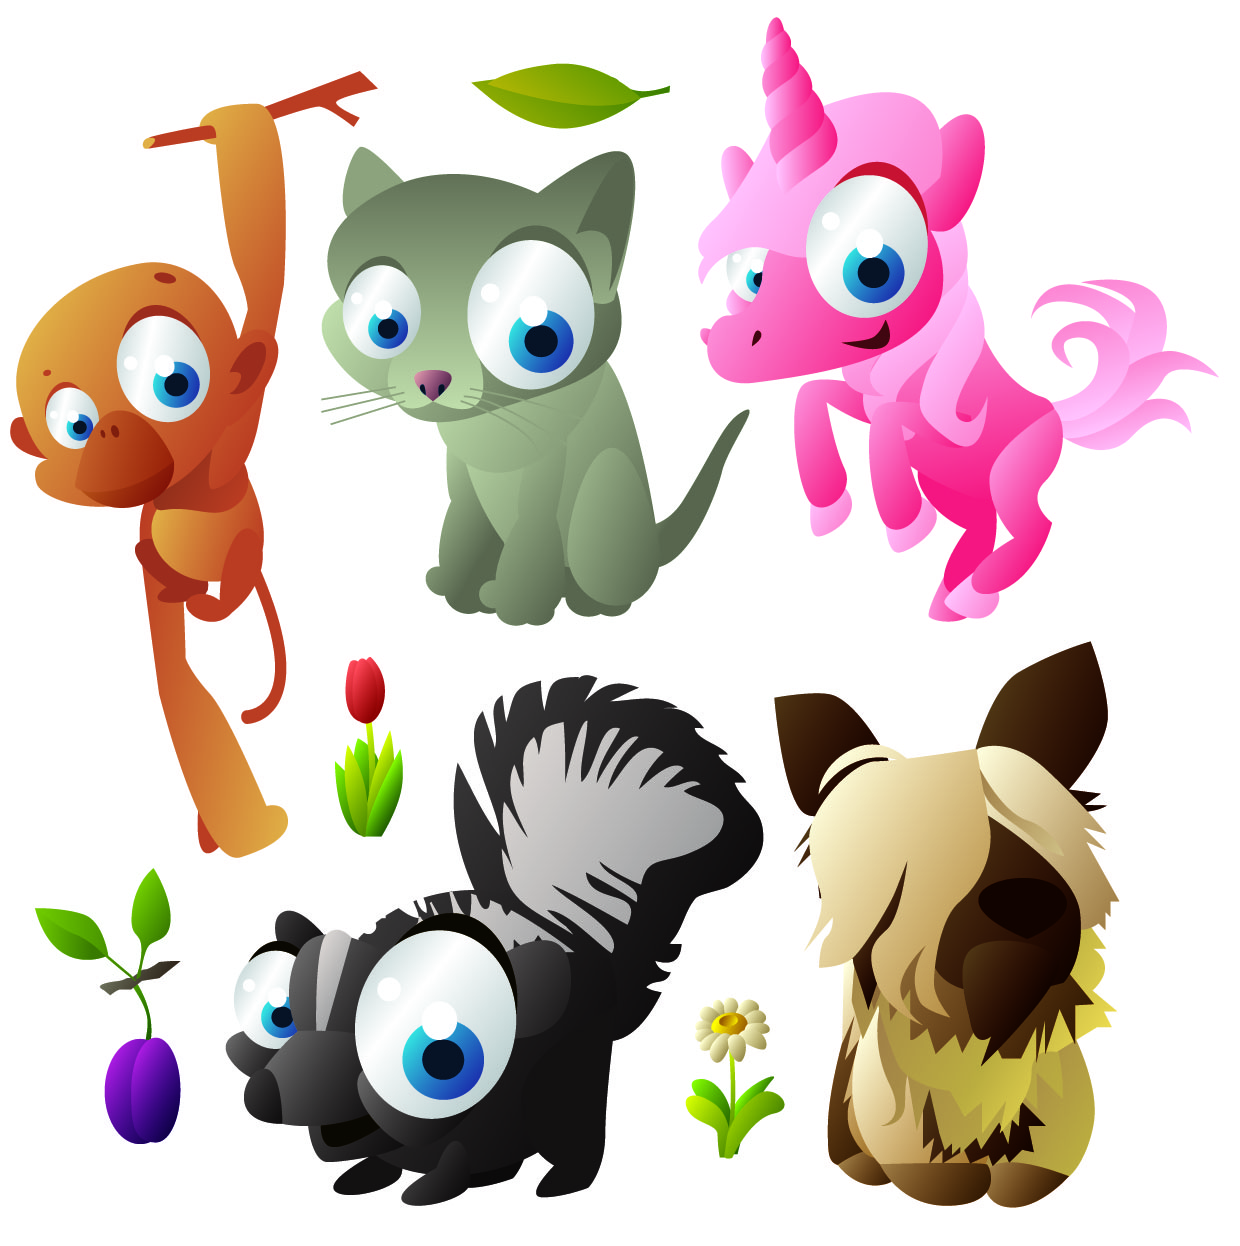 Cute cartoon animals vector Free Vector / 4Vector